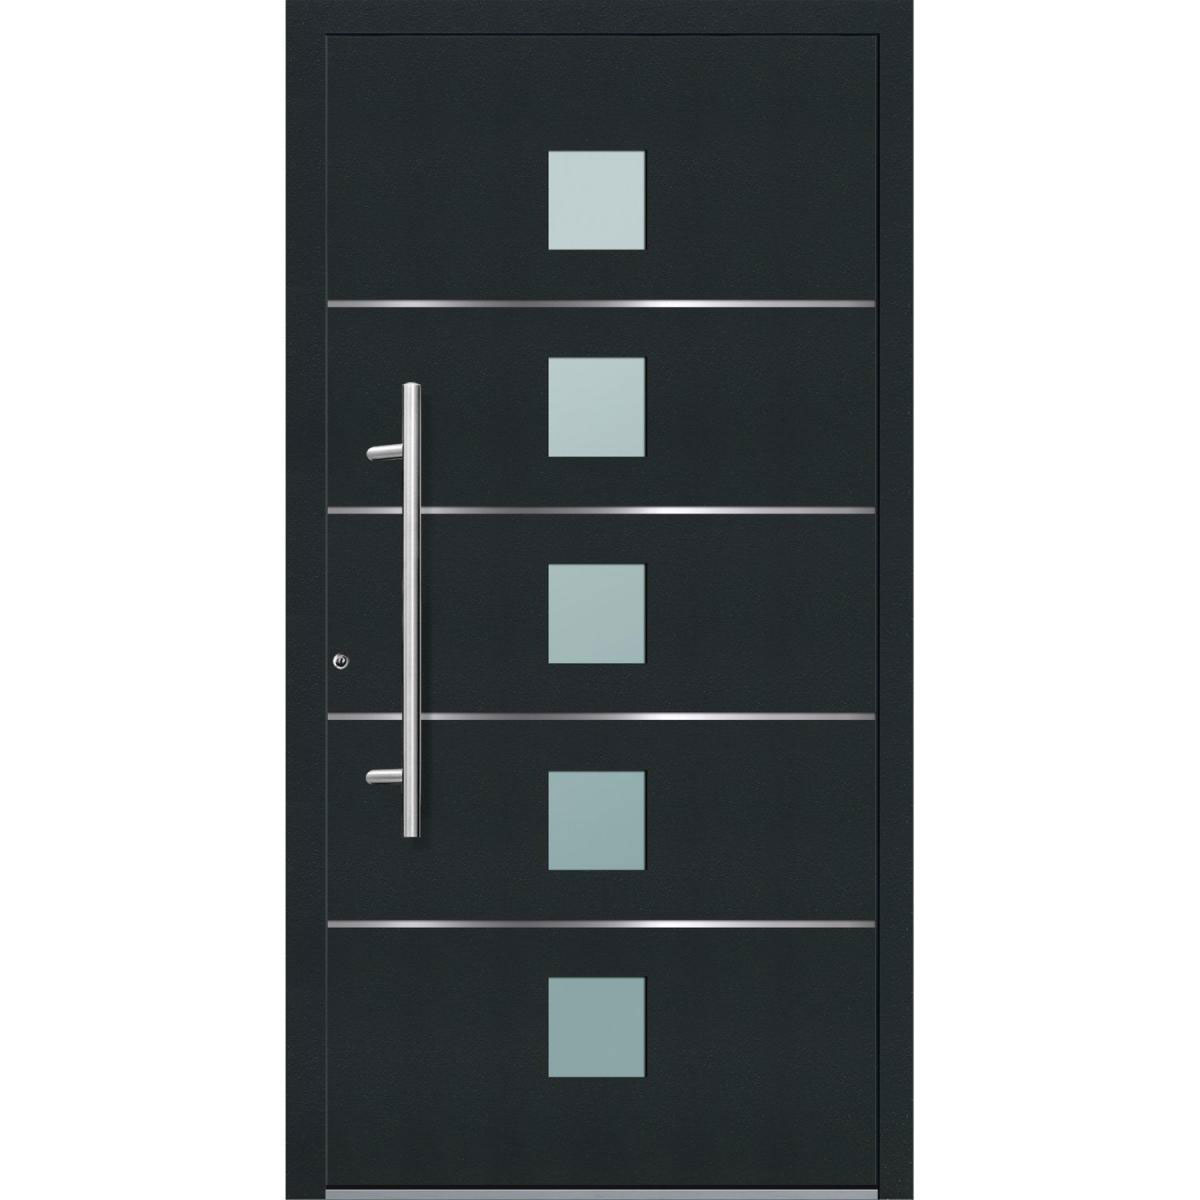 Aluminium Sicherheits-Haustür „Triest Exklusiv“, 75mm, anthrazit, 110x210 cm, Anschlag links, inkl. Griffset